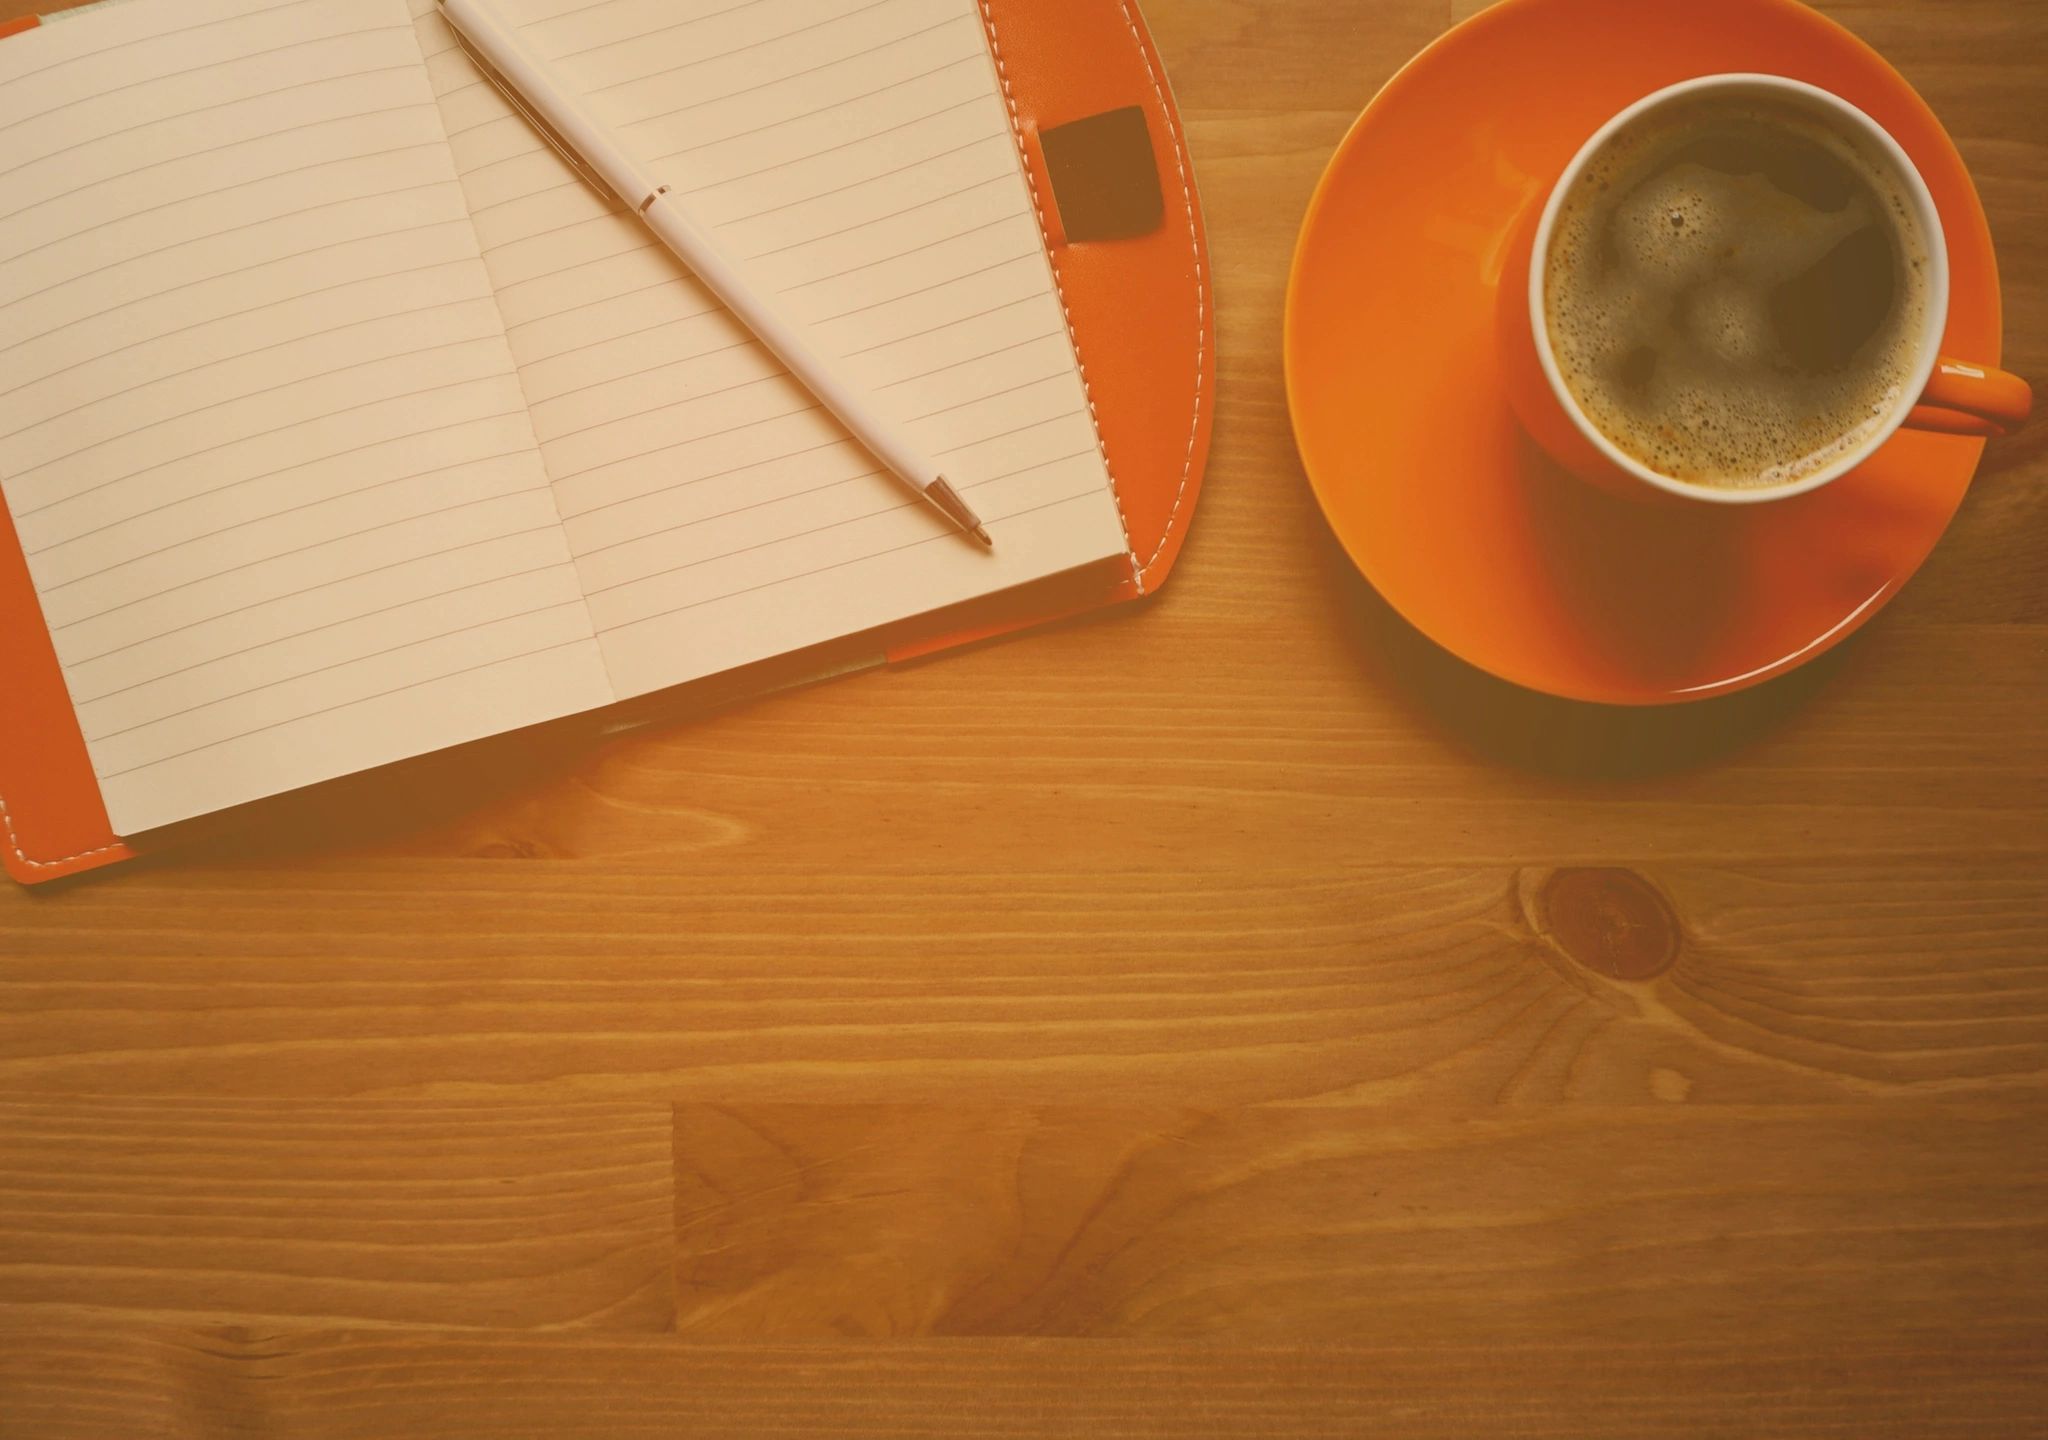 Coffee, notebook, pen on wooden desk